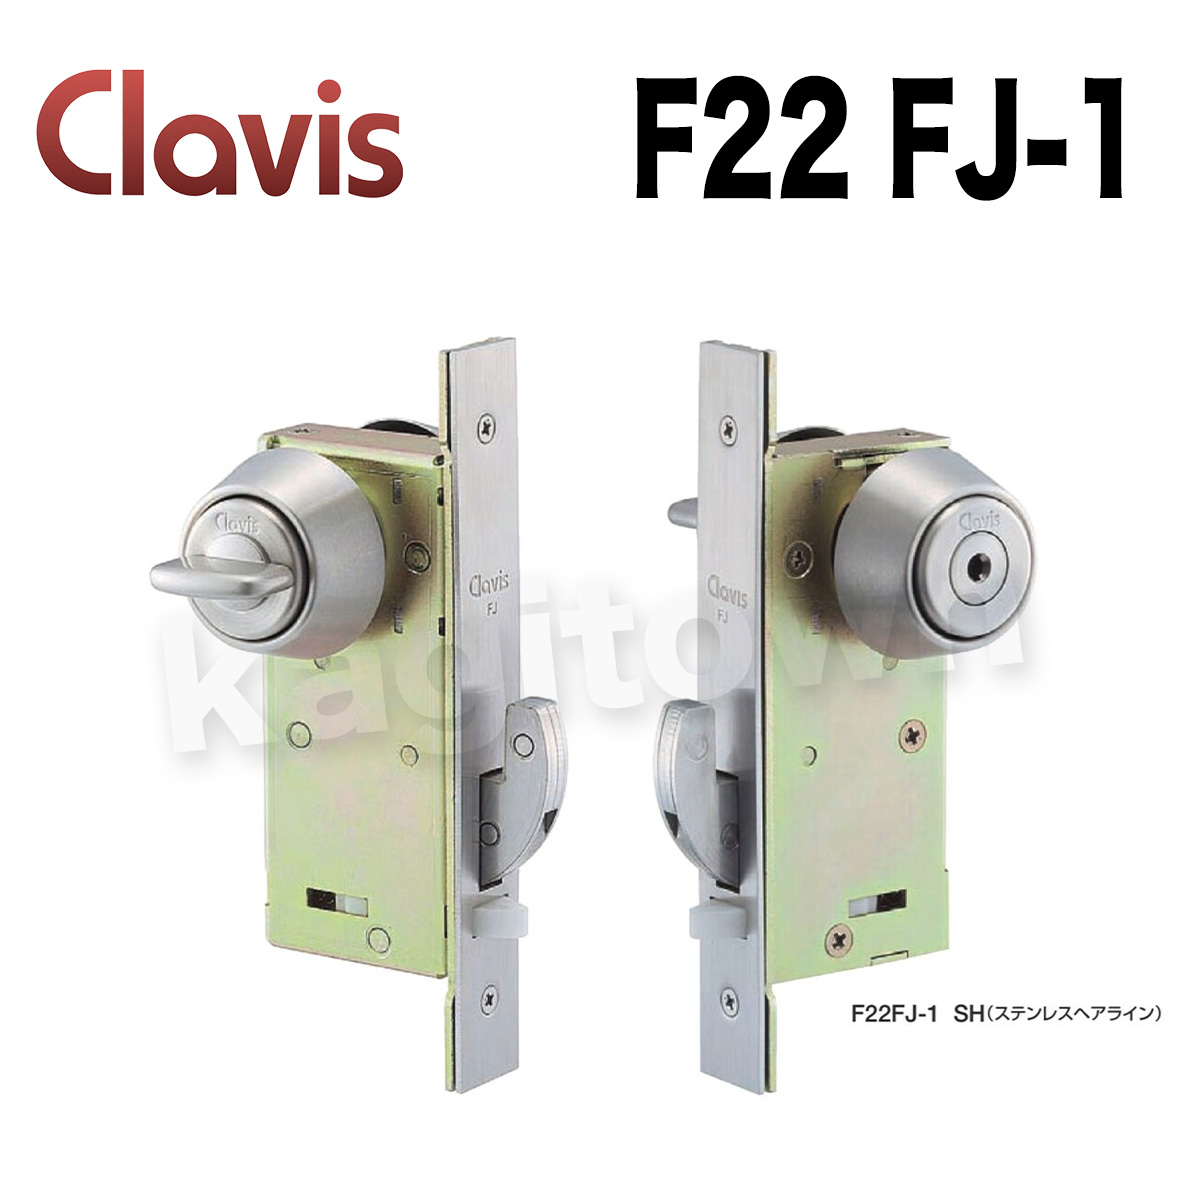 Clavis F22 FJ-1【クラビス】框扉用引戸錠 納期3~5週間 